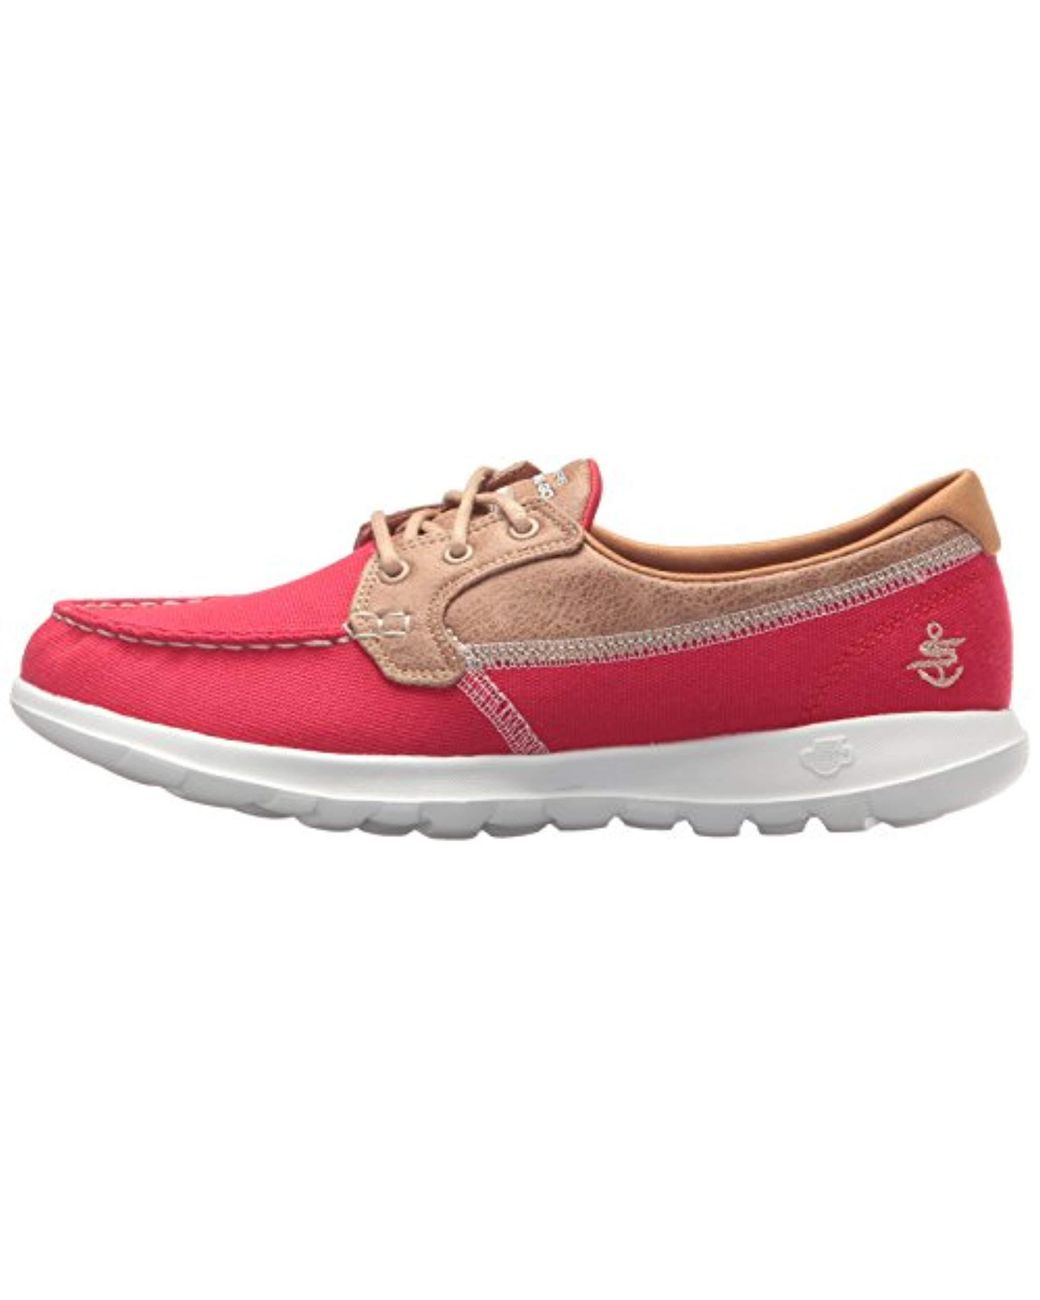 Skechers Go Walk Lite-15430 Boat Shoe in Red | Lyst